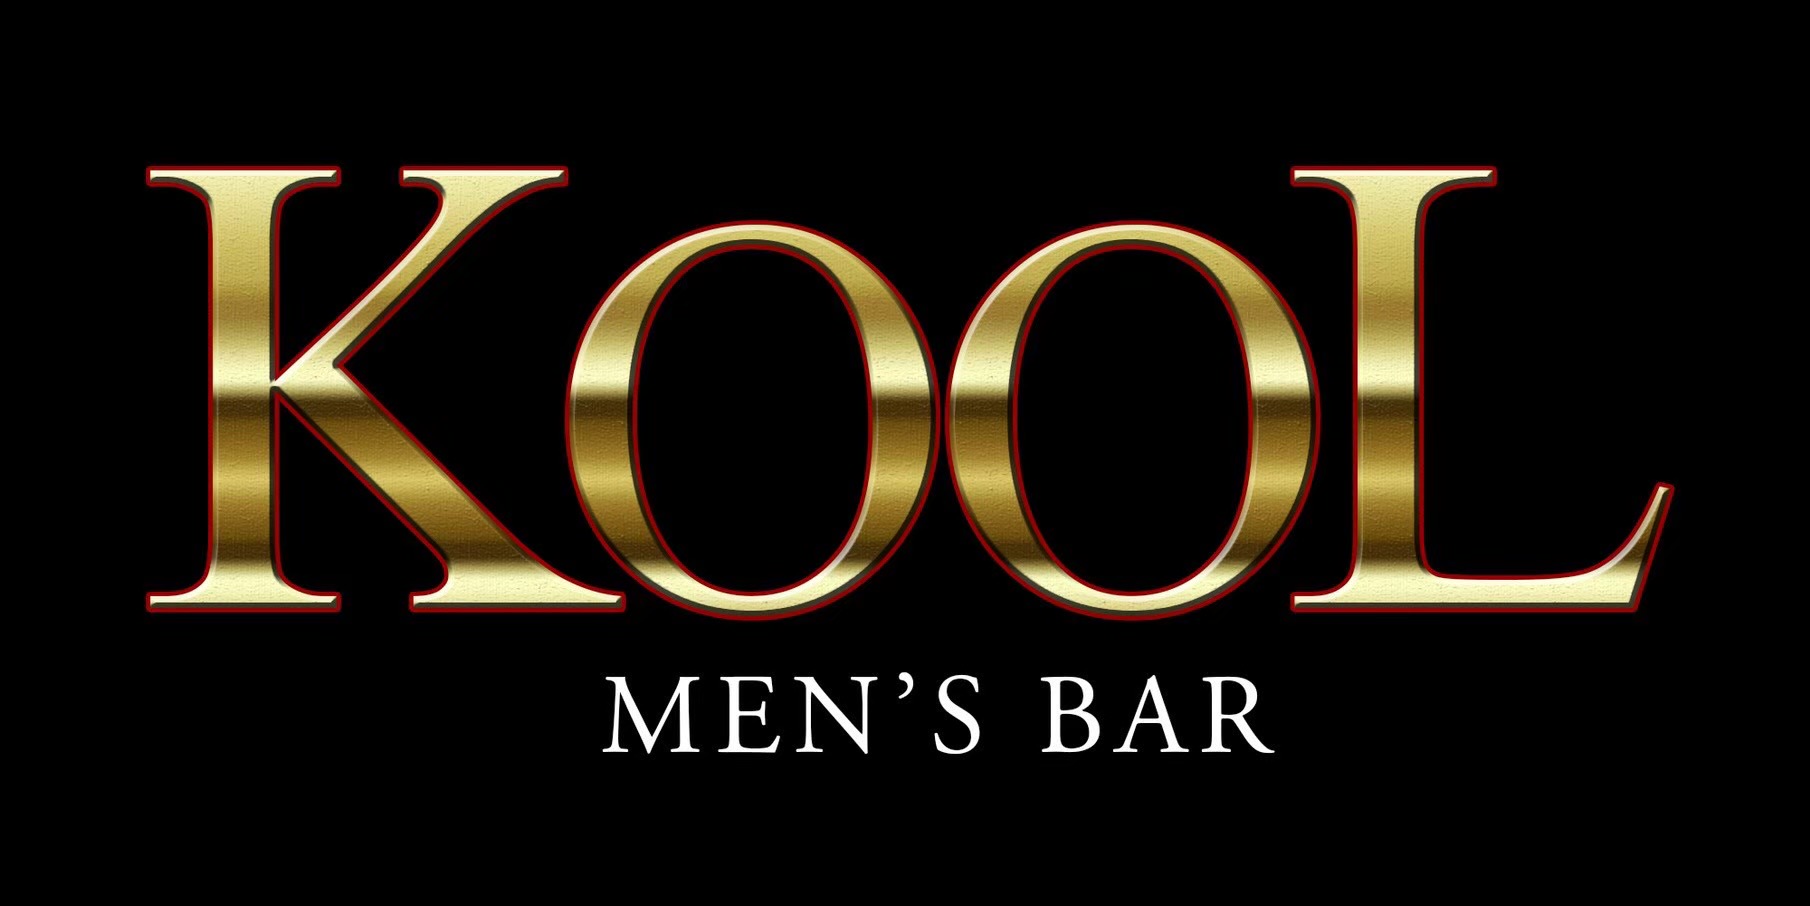 ケイスケ  (バンドマン)Men's Bar KOOL